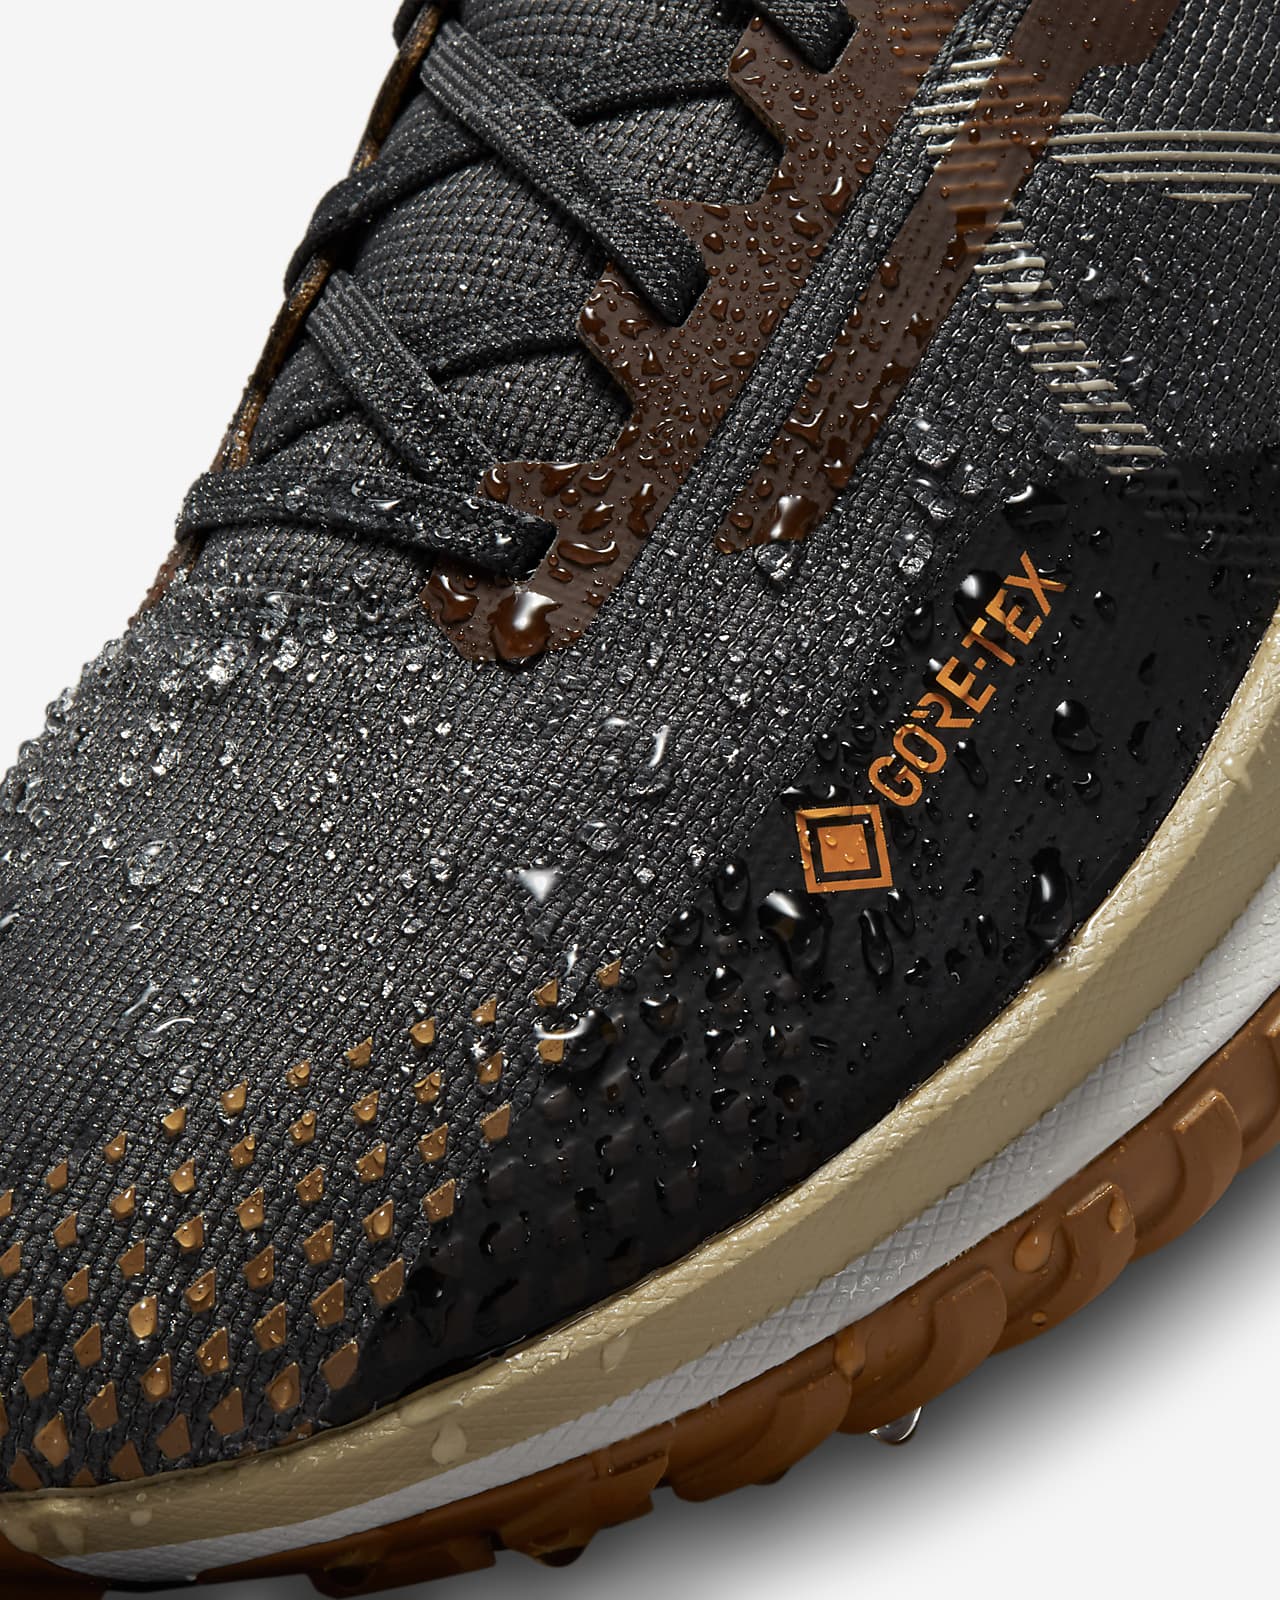 Briljant enkel cijfer Nike Pegasus Trail 4 GORE-TEX Men's Waterproof Trail Running Shoes. Nike.com